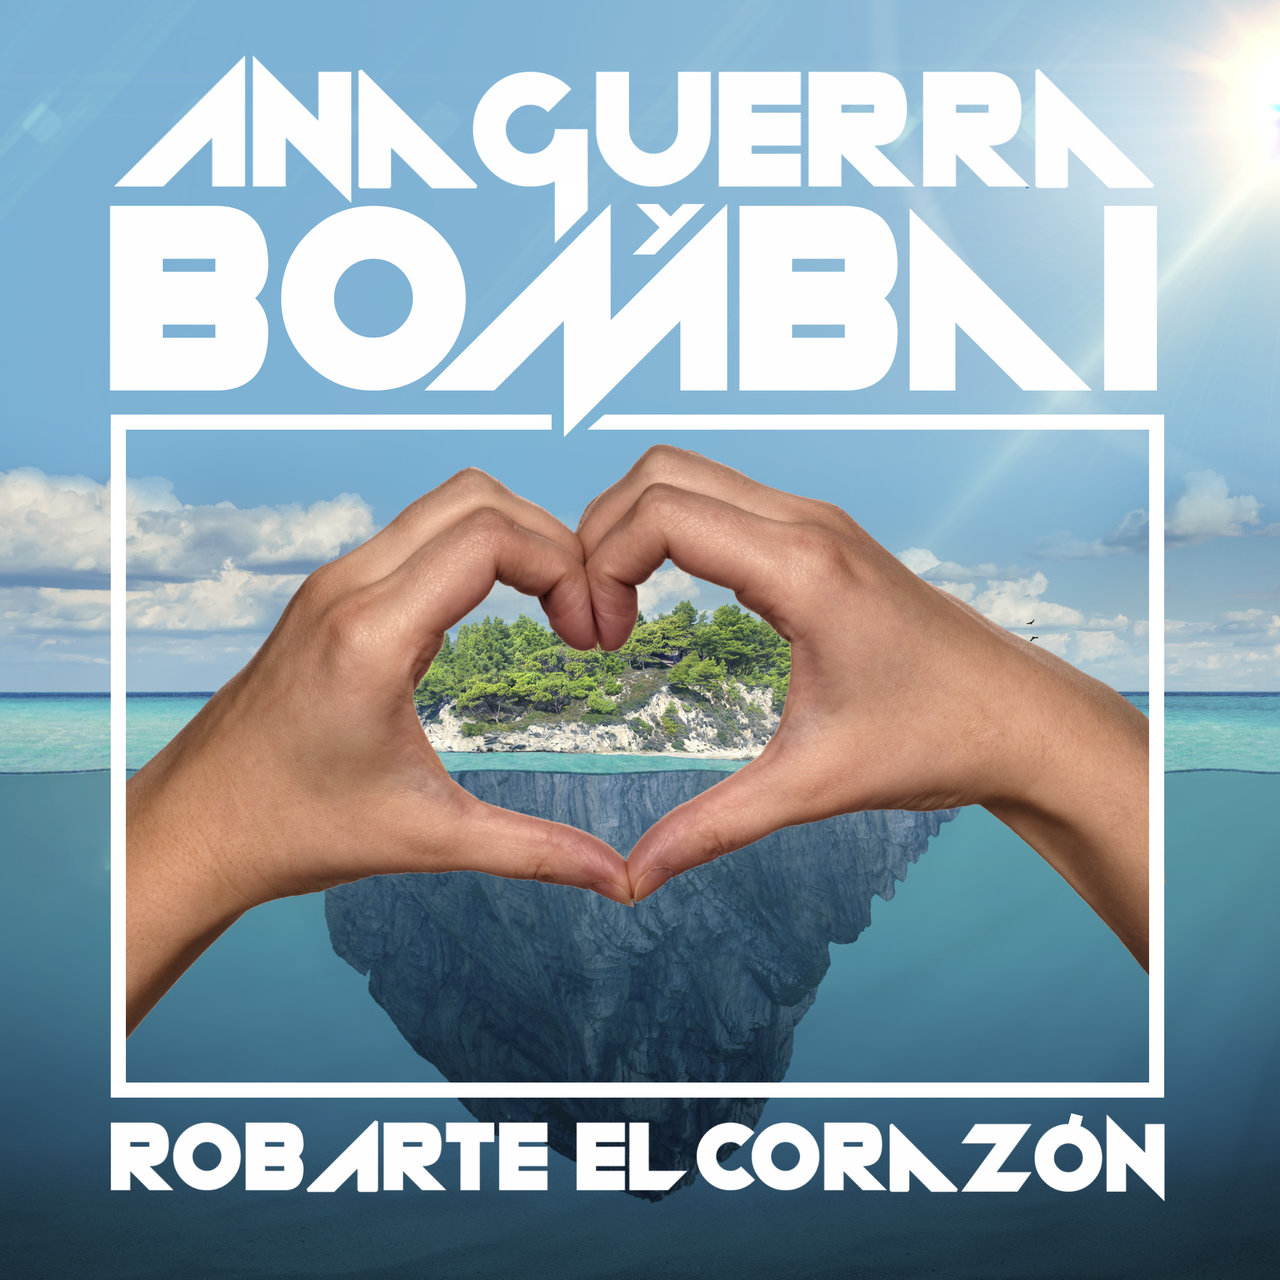 Bombai featuring Ana Guerra — Robarte el Corazón cover artwork